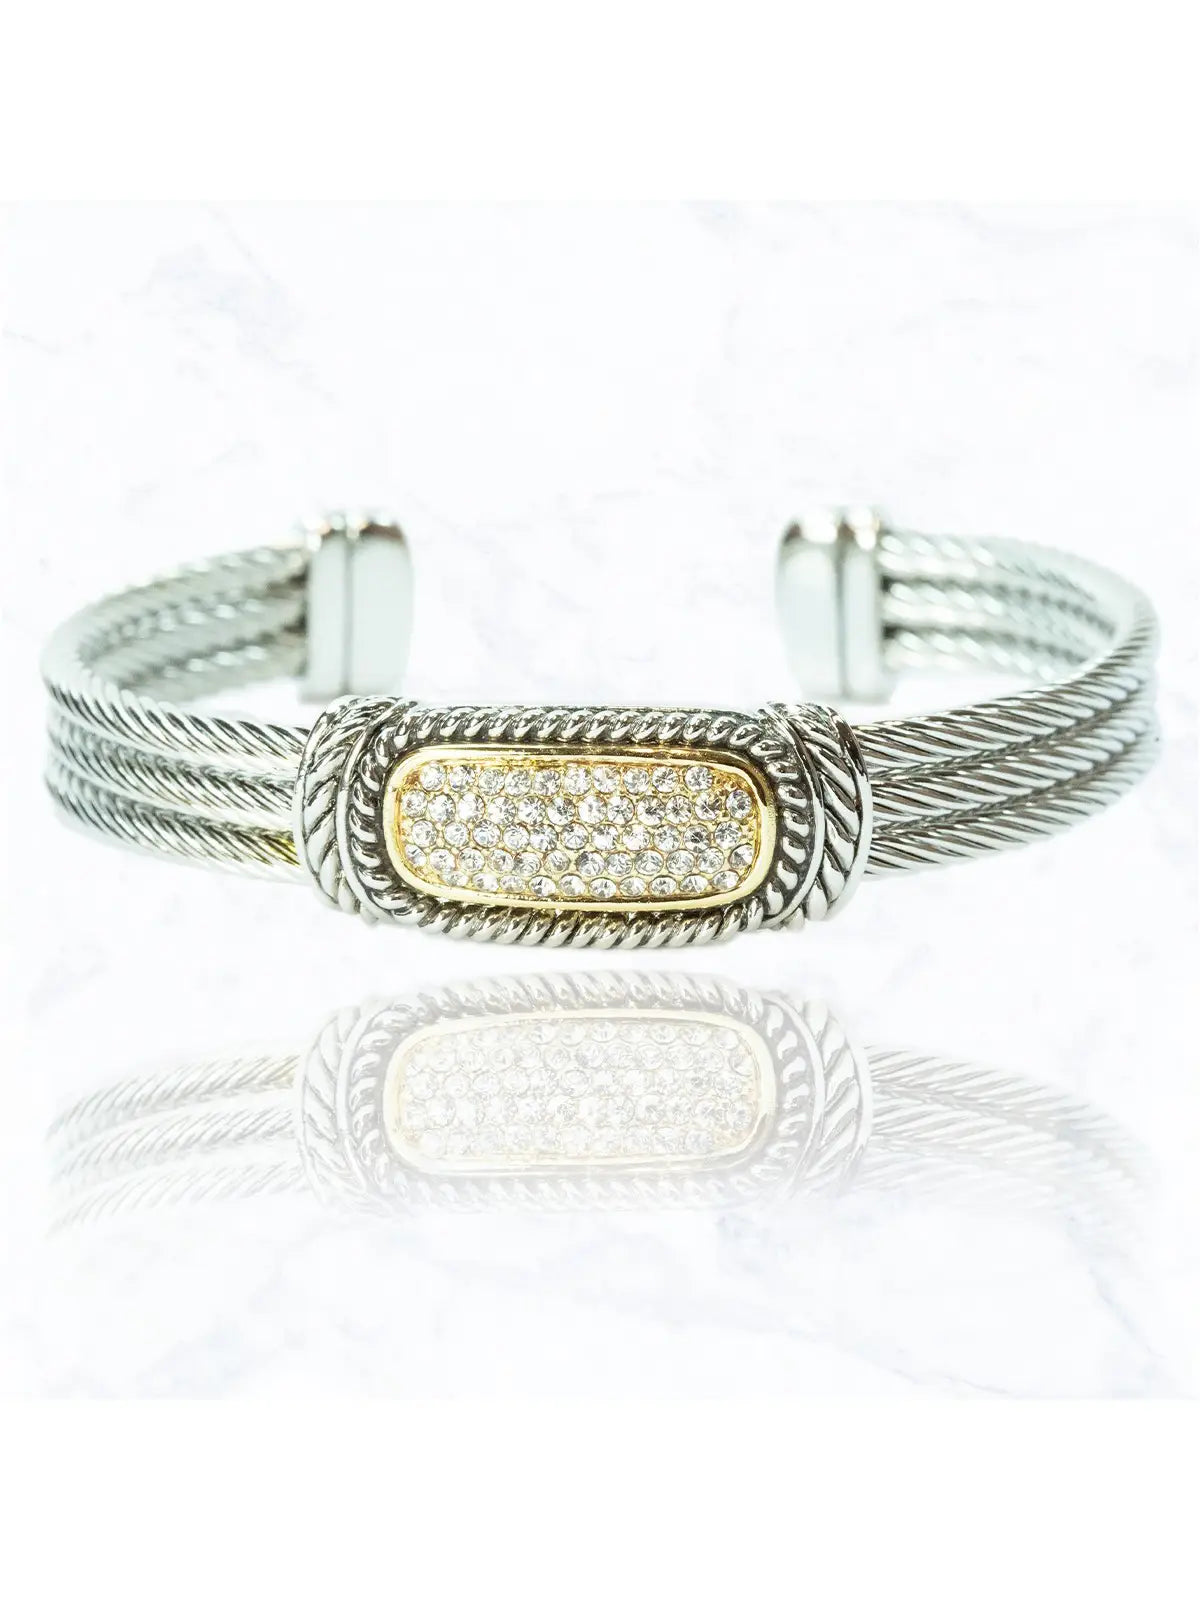 Suzie Q USA Luxury Metal Wired Cuff Bracelet With Diamonds